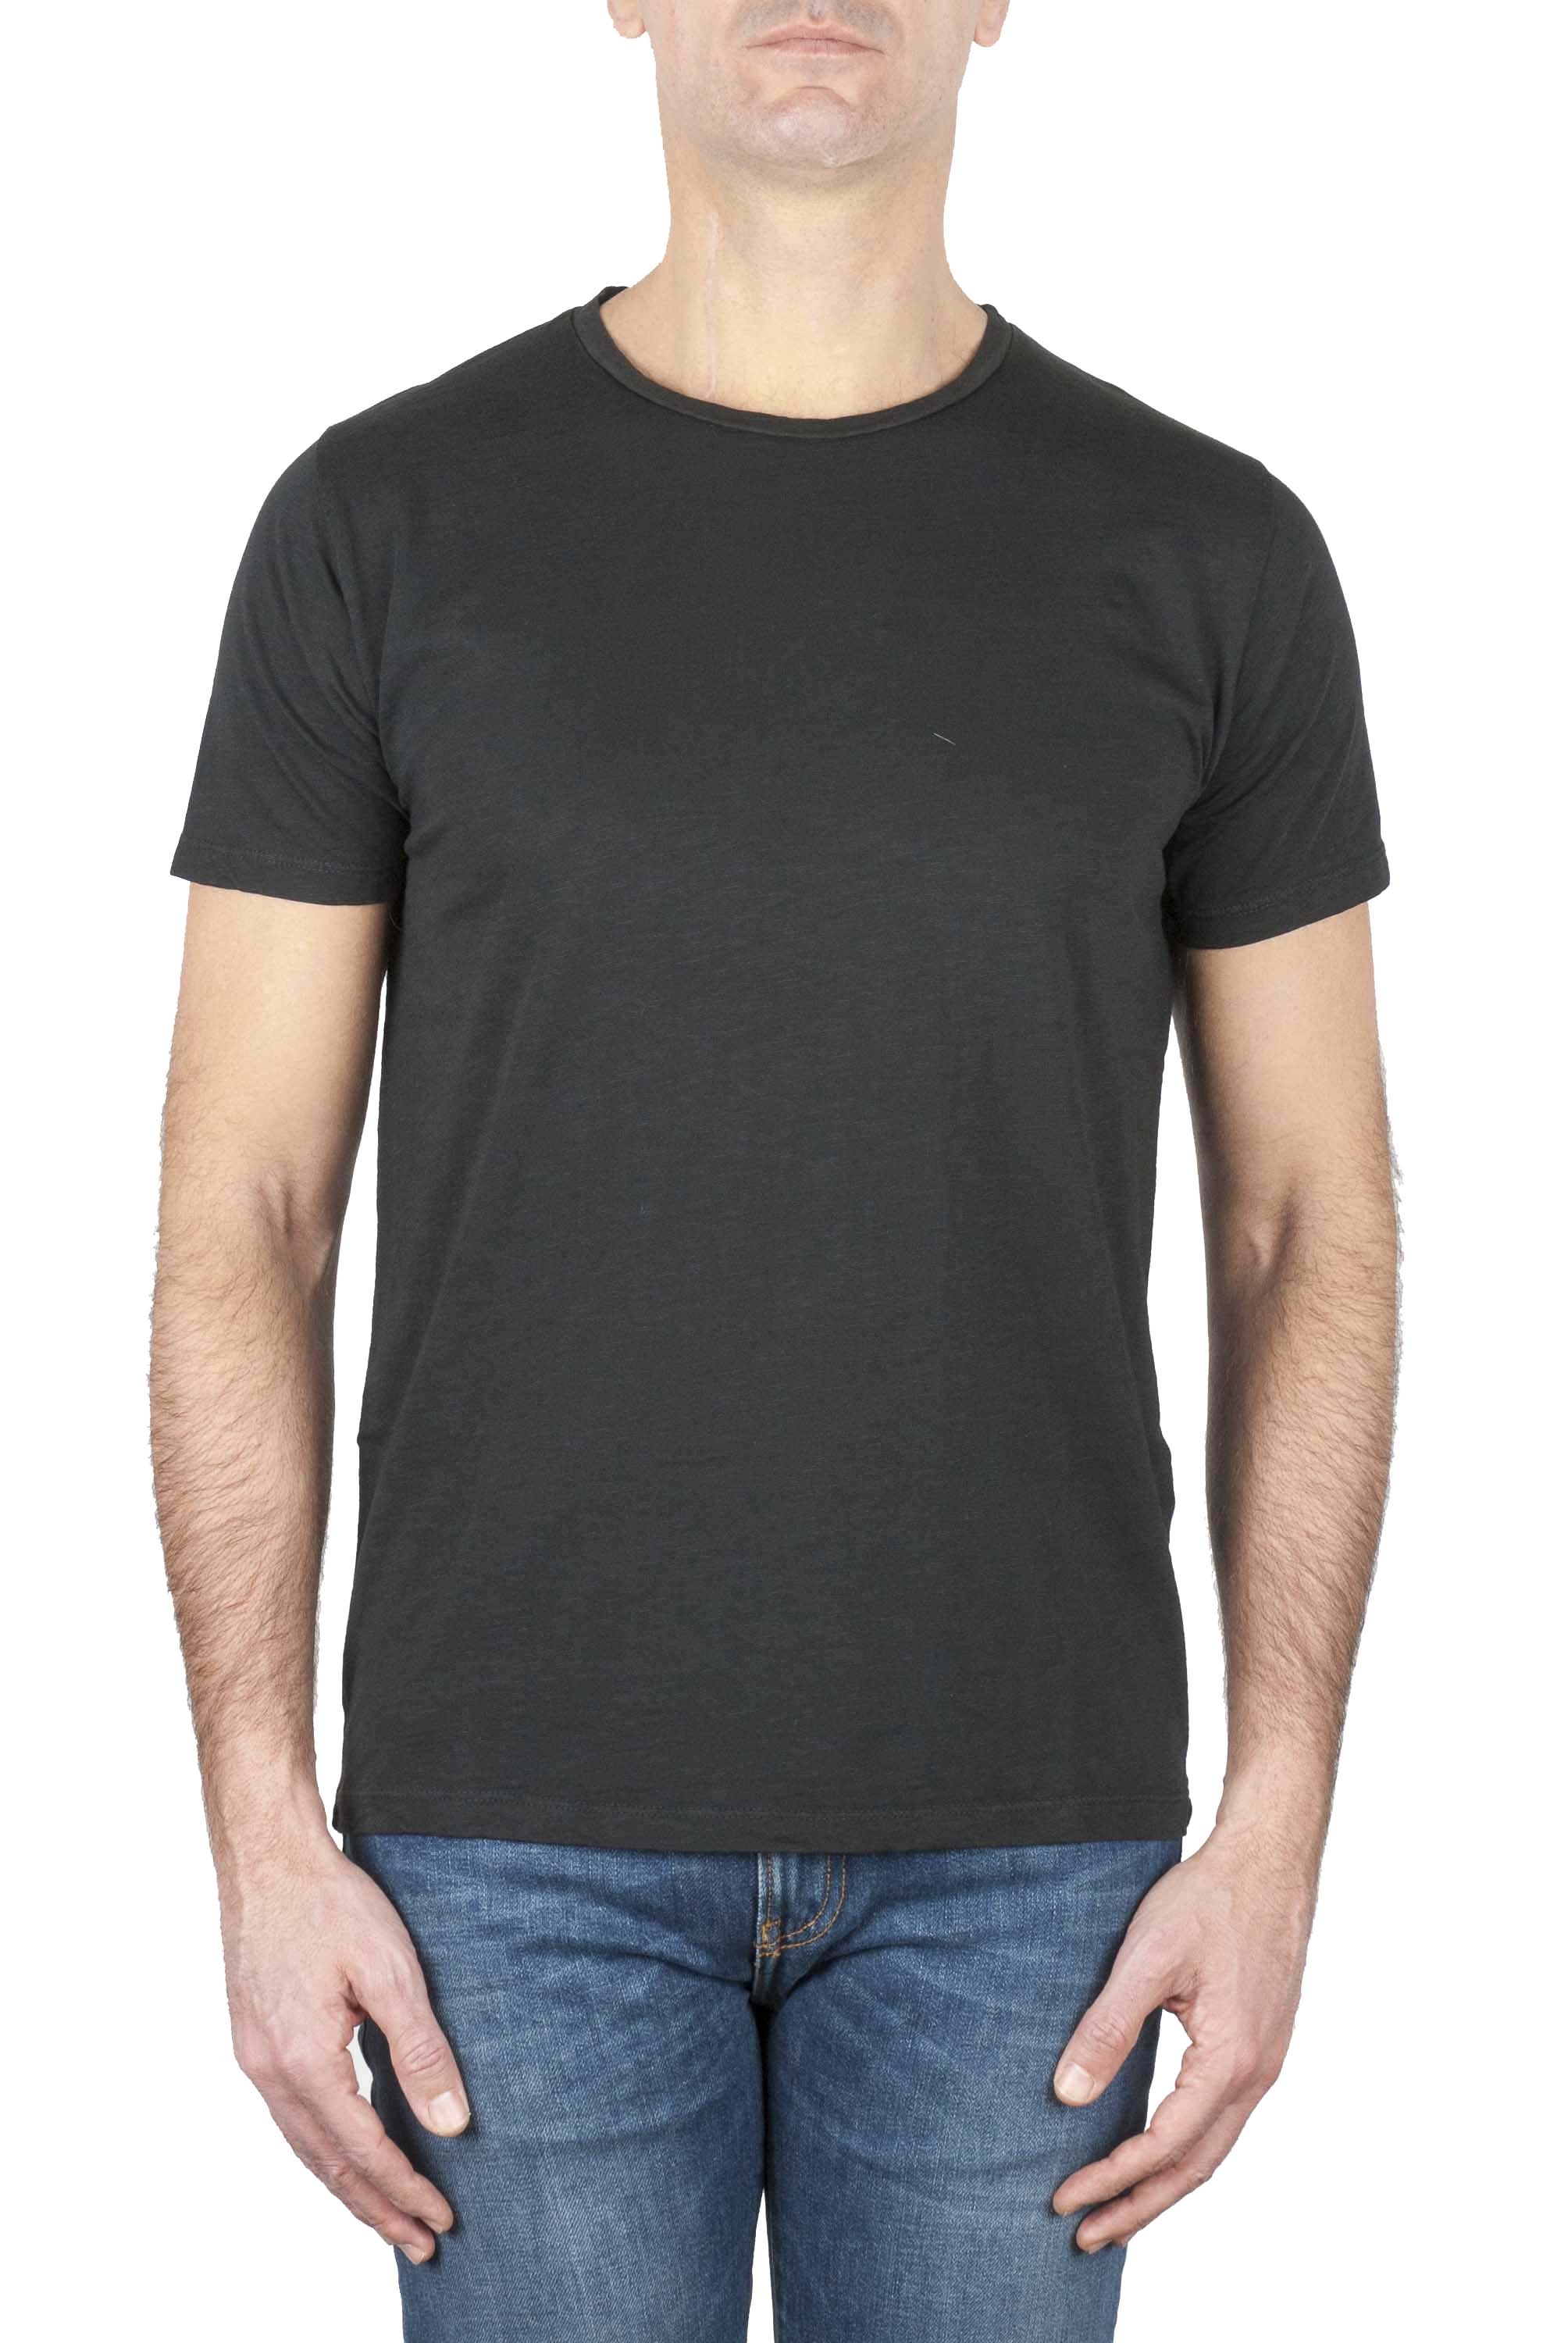 SBU 01644_19AW Camiseta de algodón con cuello redondo en color negro 01